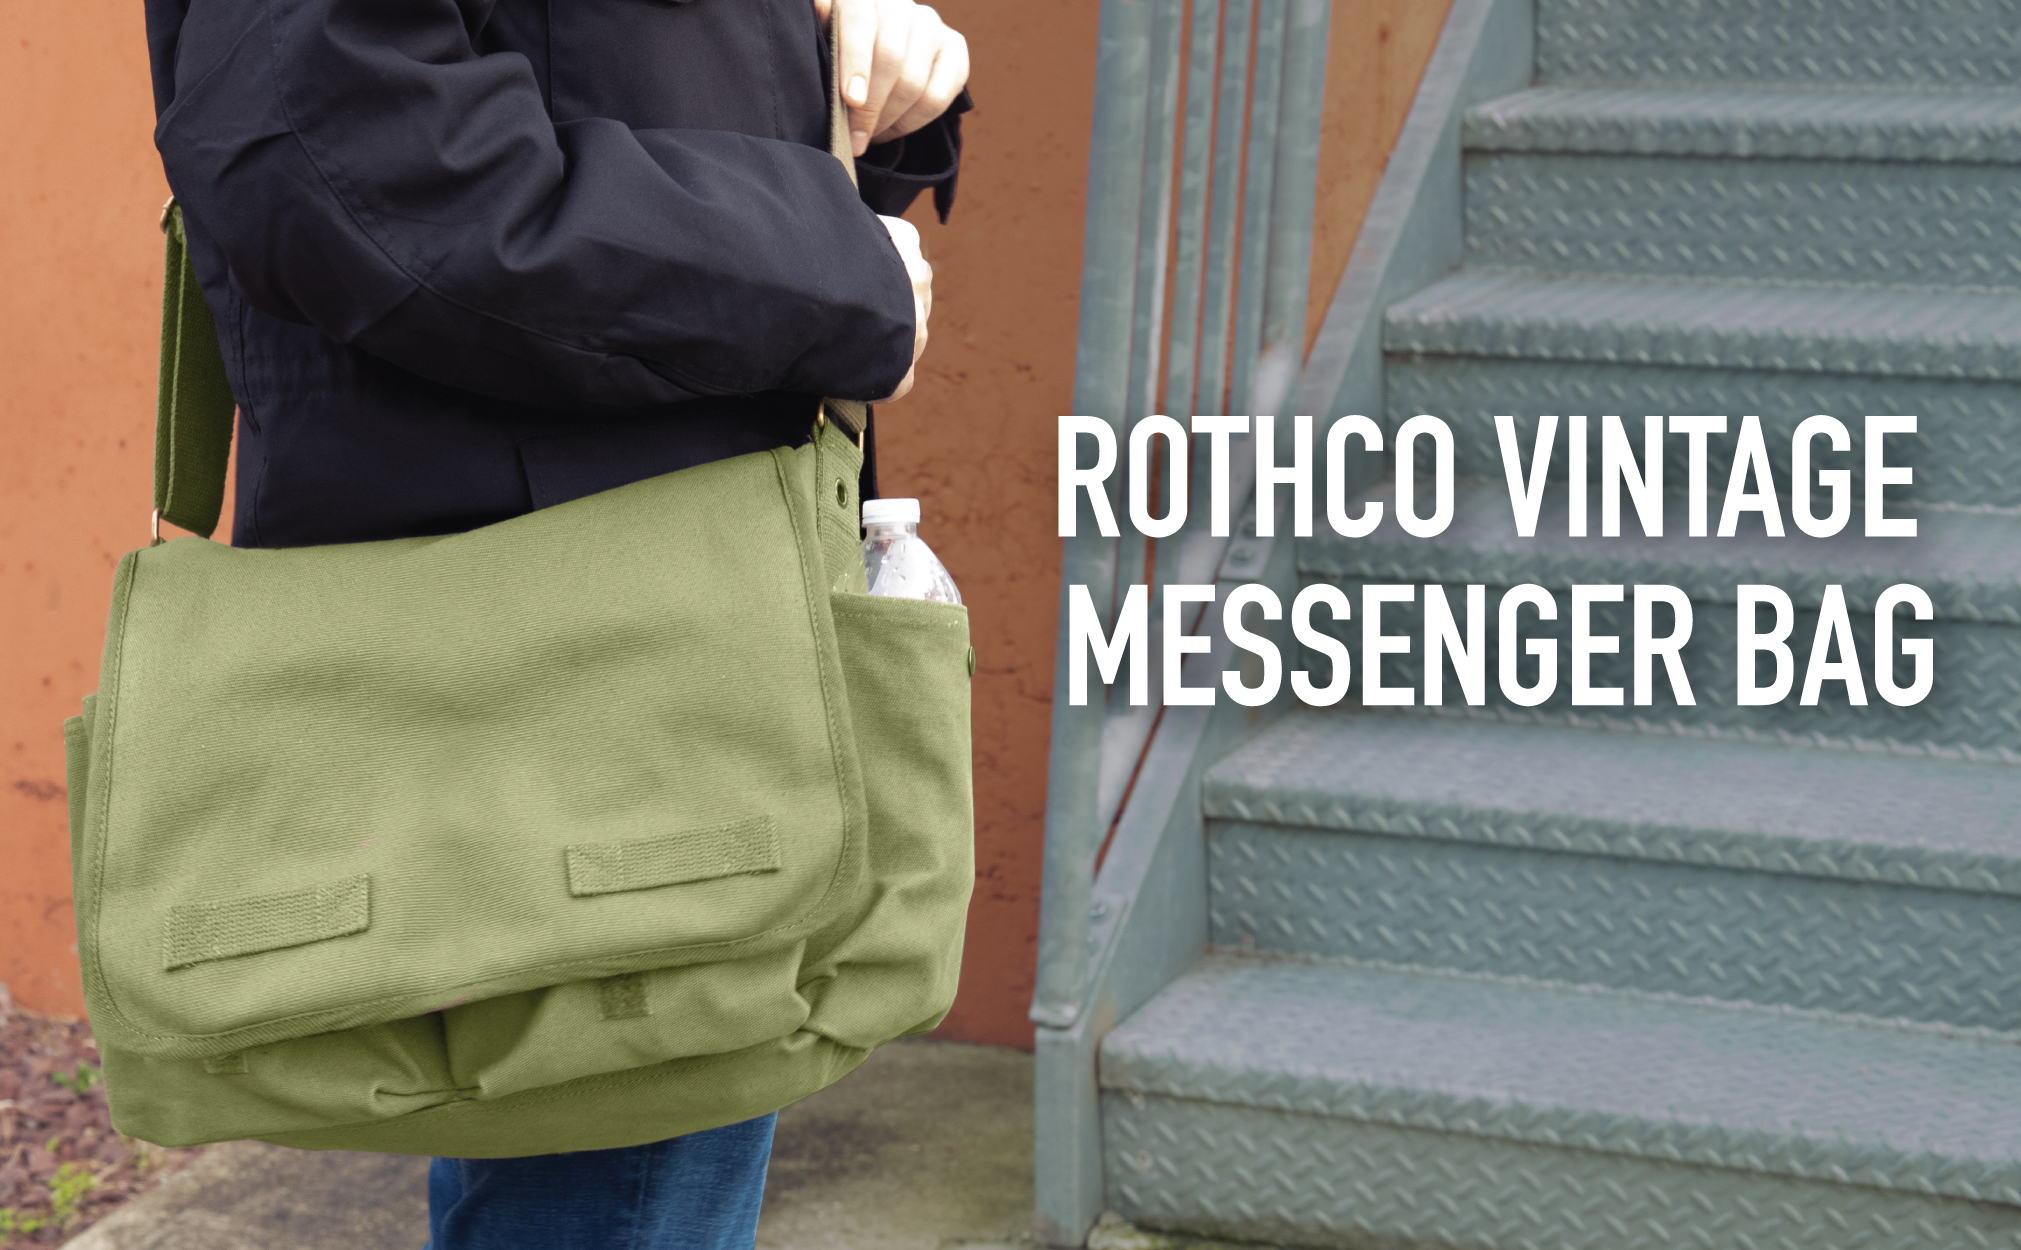 Rothco Classic Canvas Messenger Bag, Charcoal Grey - image 3 of 3